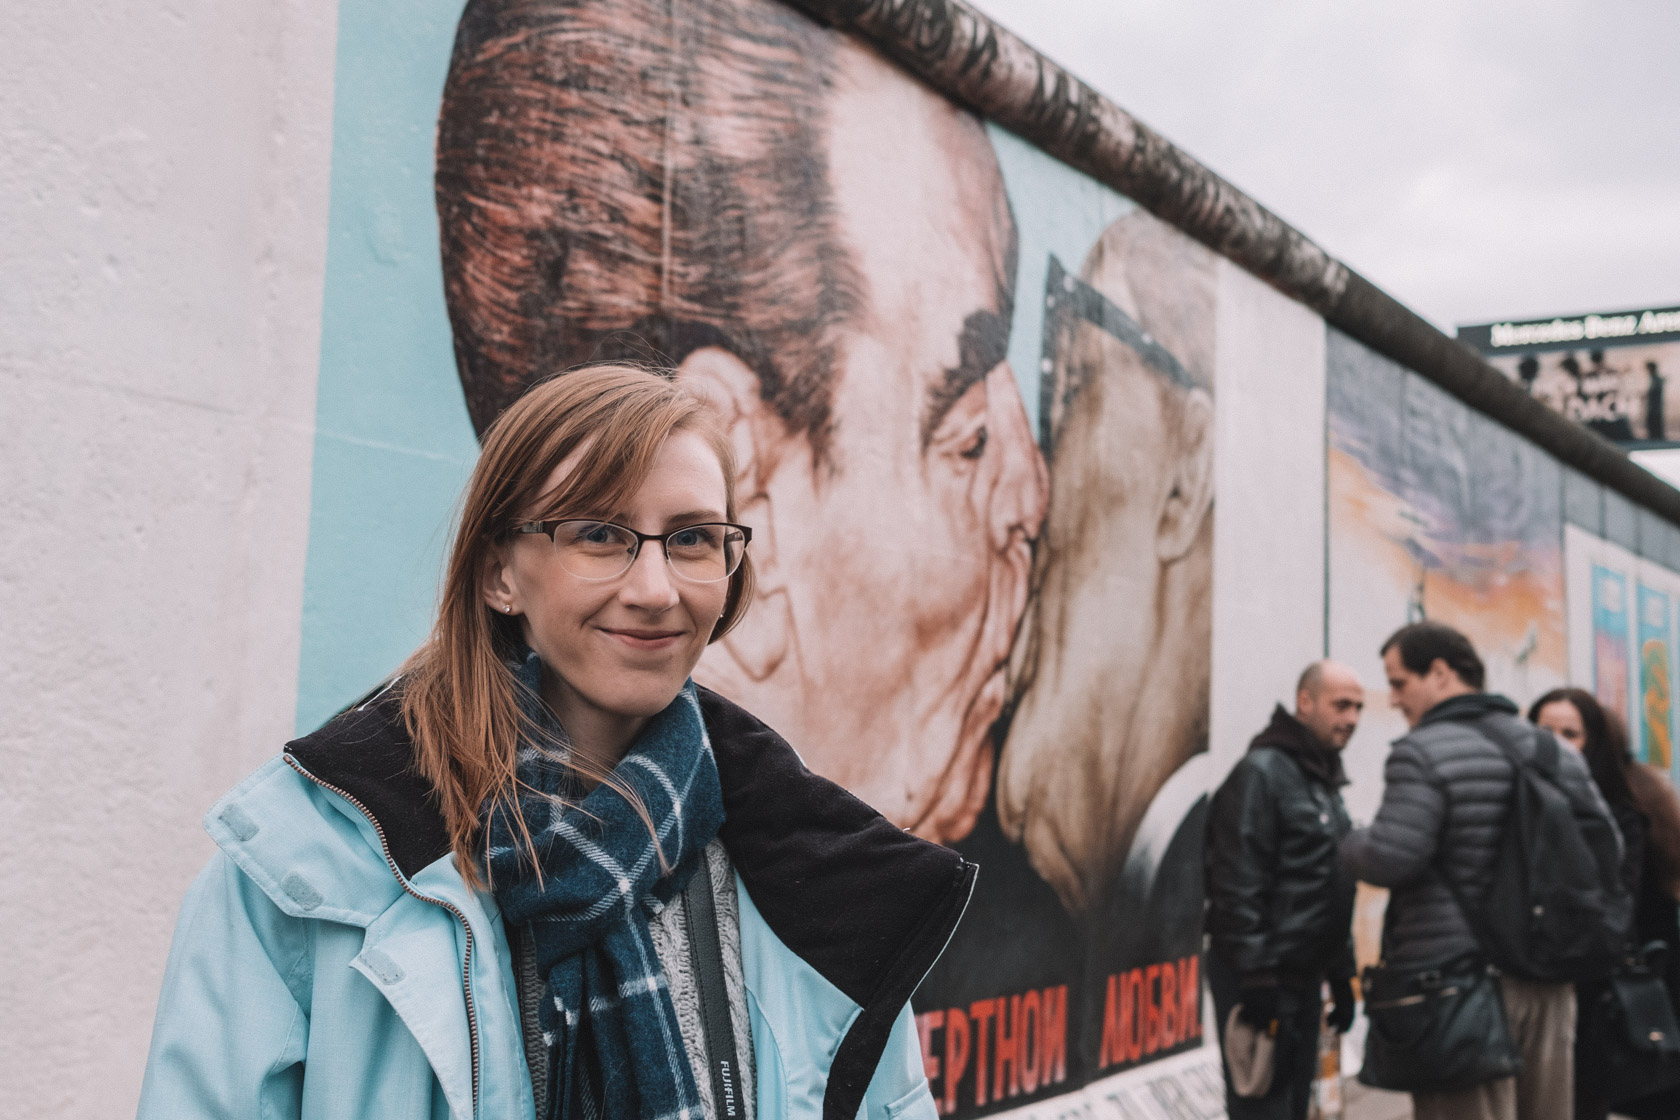 The Berlin Wall, East Side Gallery